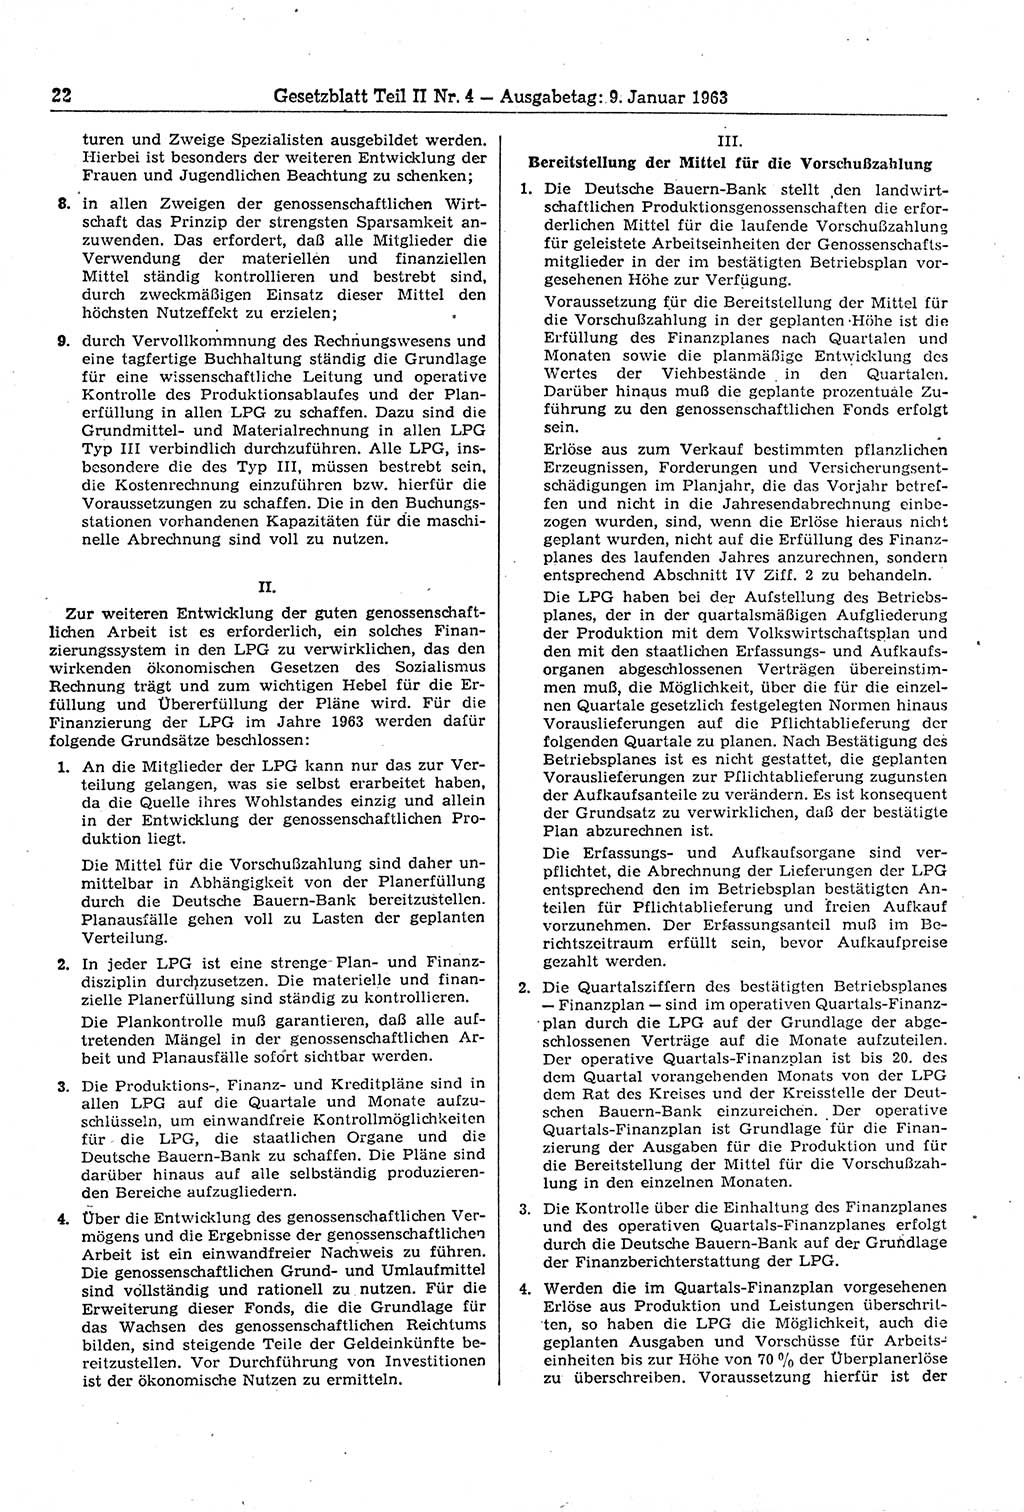 Gesetzblatt (GBl.) der Deutschen Demokratischen Republik (DDR) Teil ⅠⅠ 1963, Seite 22 (GBl. DDR ⅠⅠ 1963, S. 22)